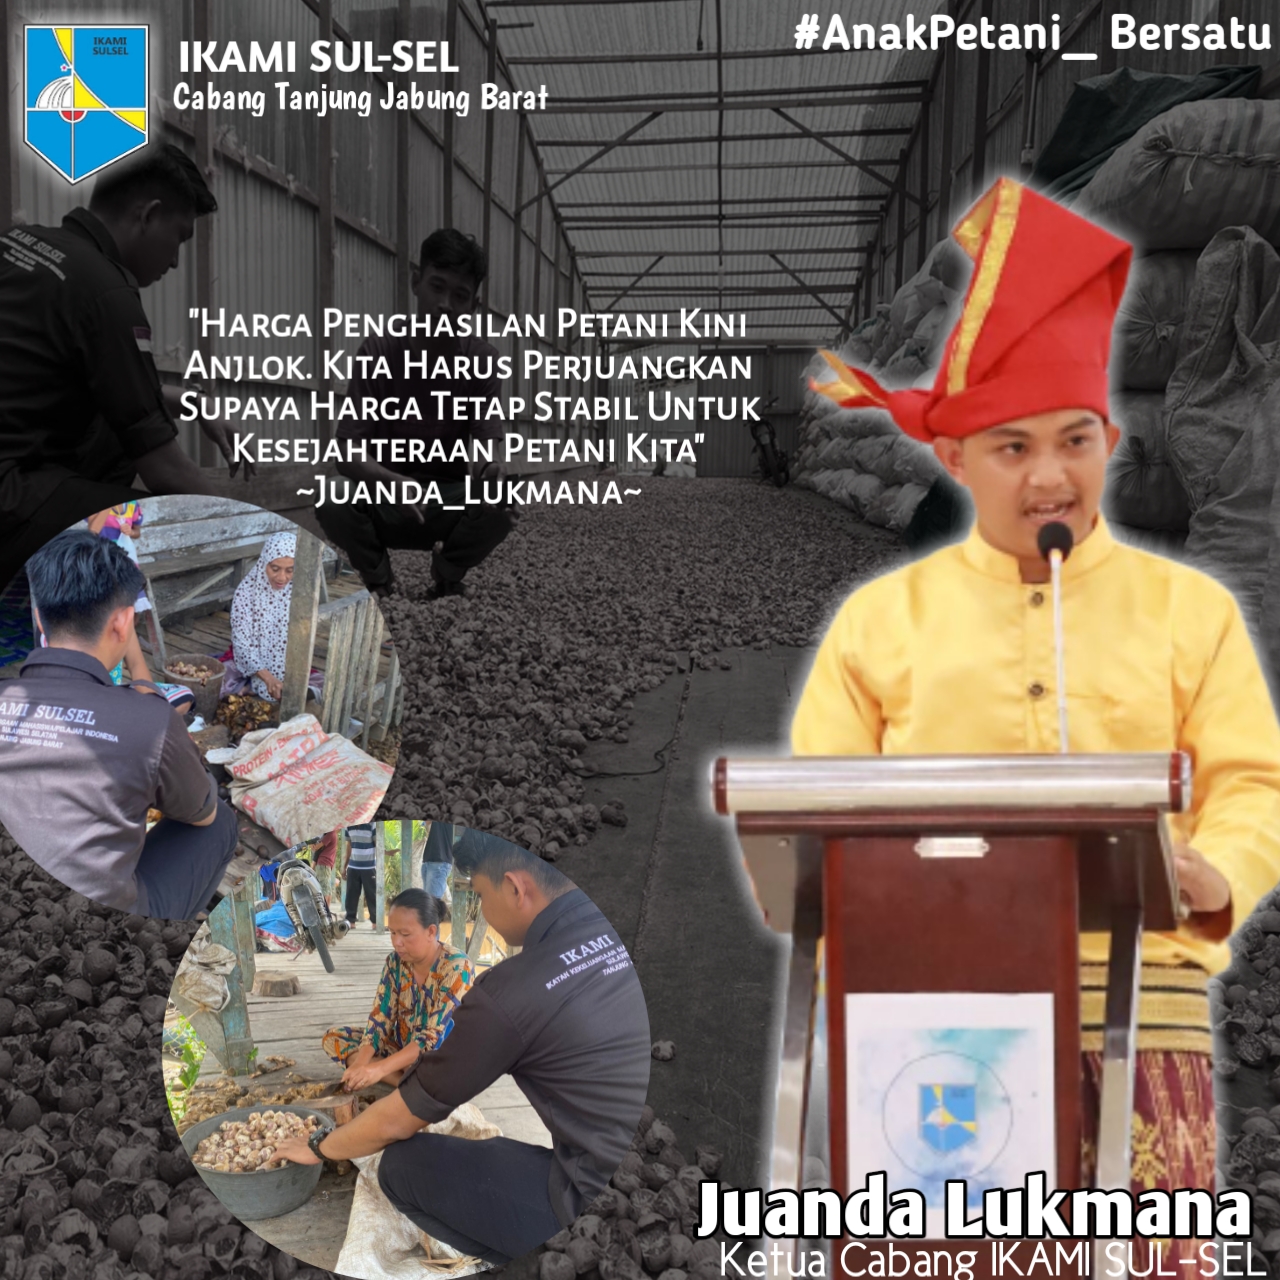 Ketua IKAMI Sulsel Tanjab Barat Kunjungi Petani Kuala Betara